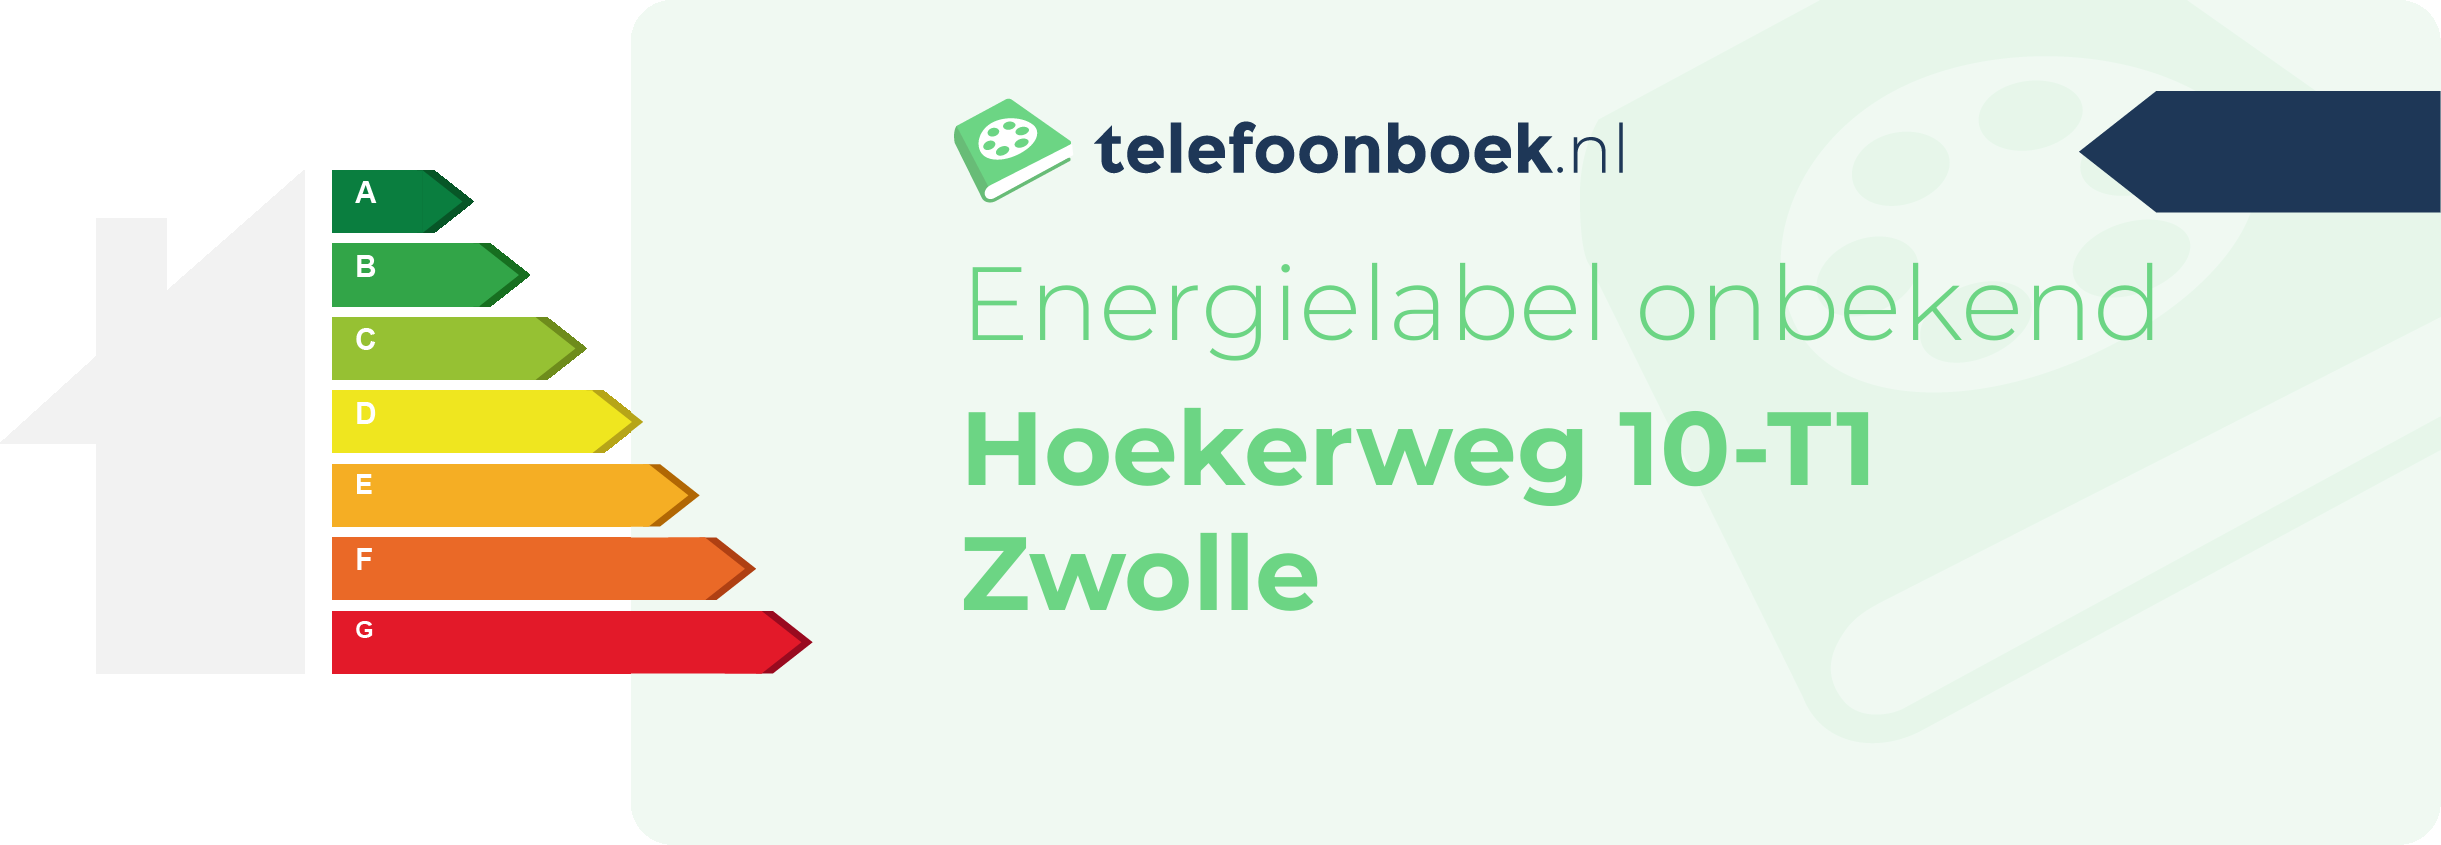 Energielabel Hoekerweg 10-T1 Zwolle